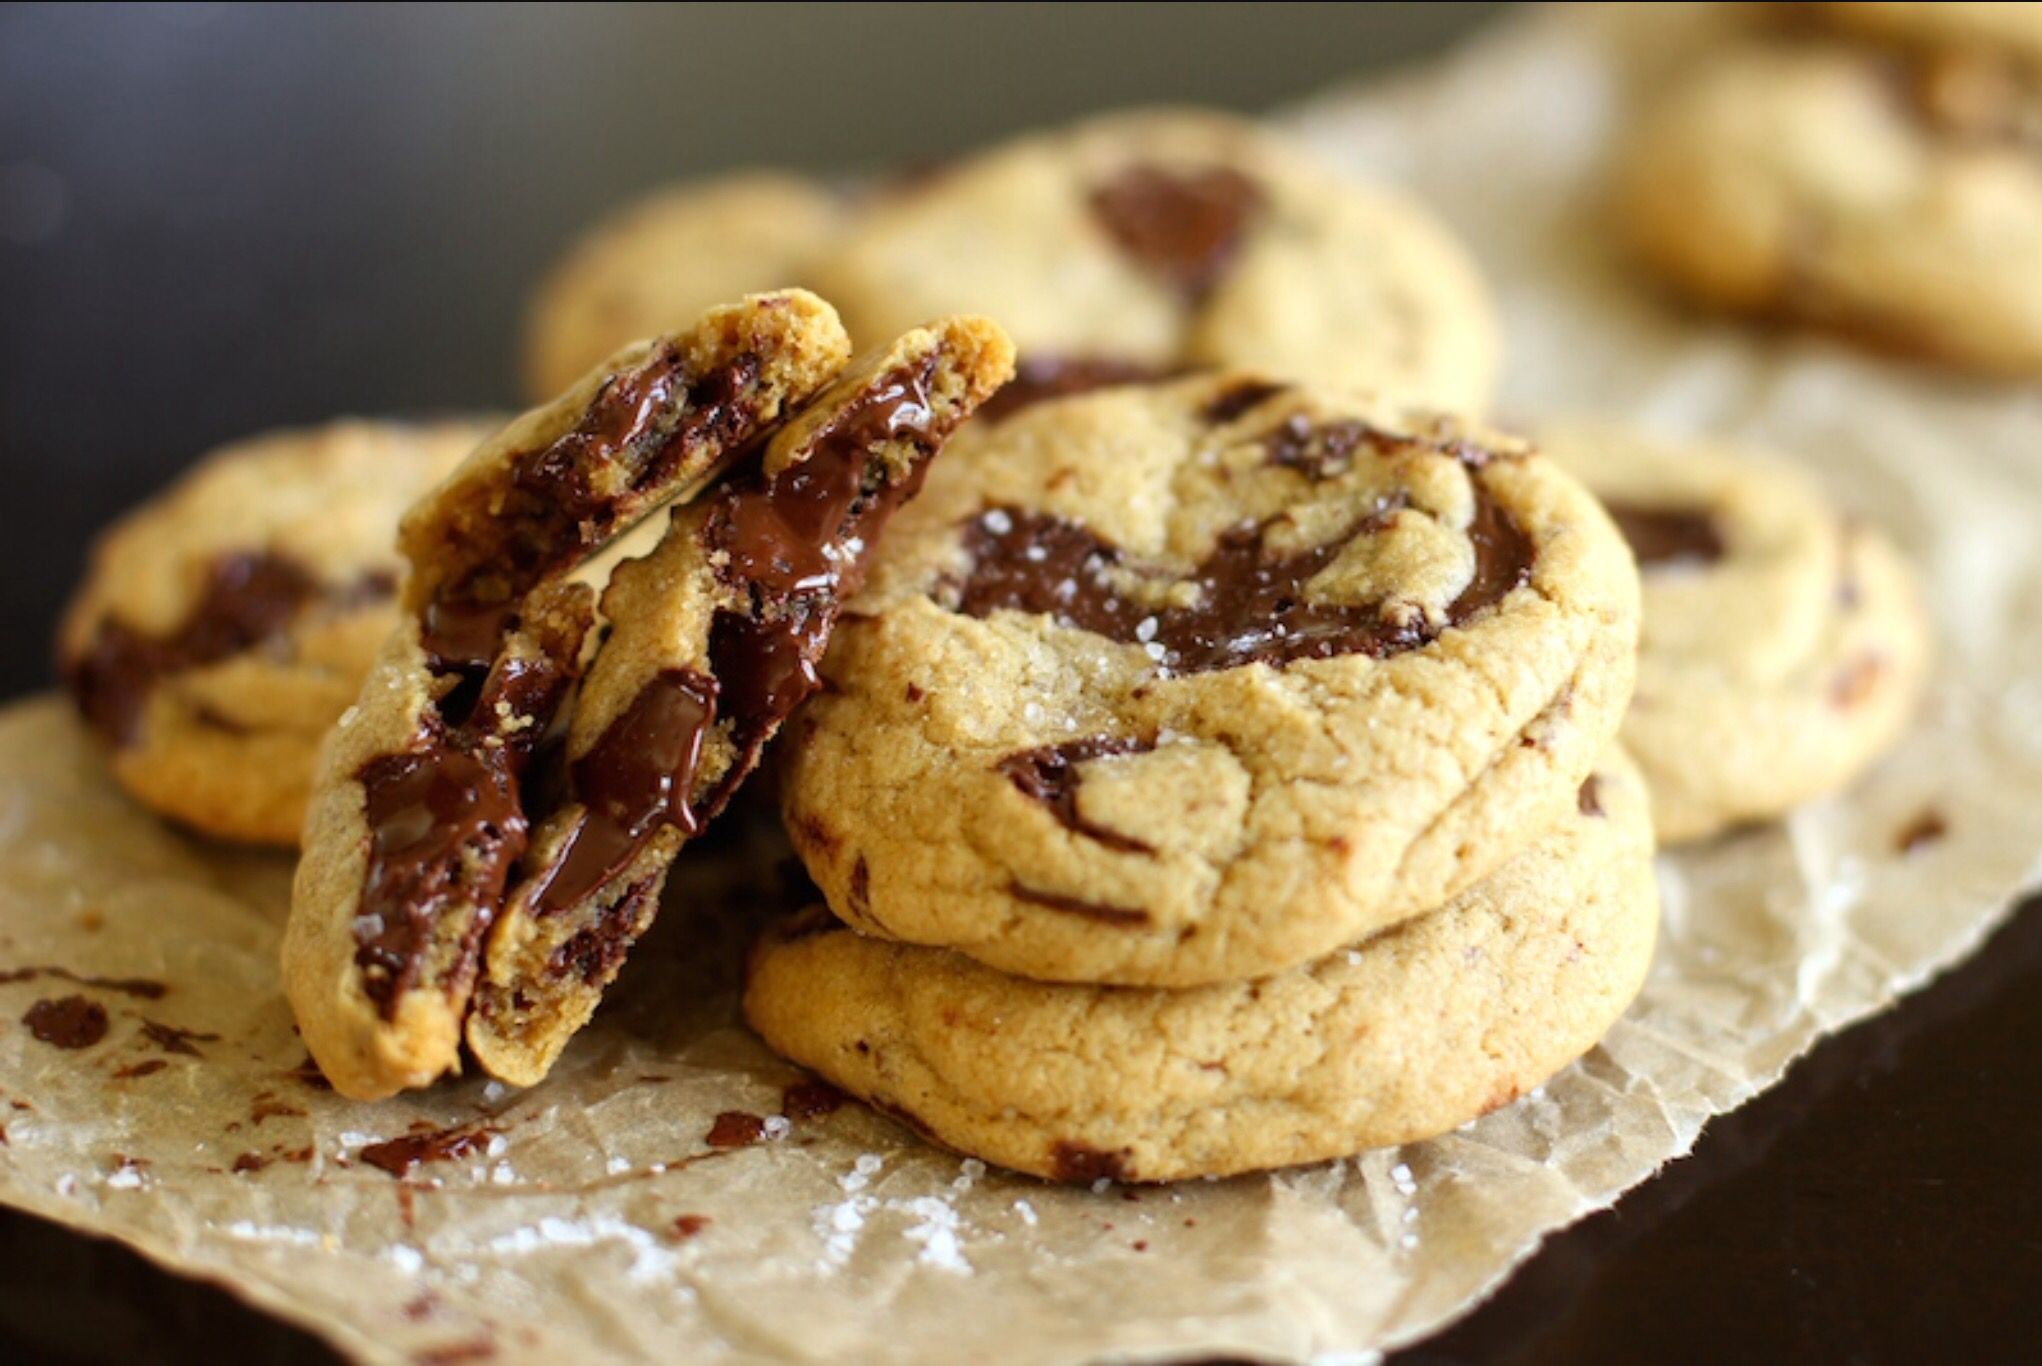 Запись cookies. Американское шоколадное печенье кукис. Песочное печенье кукис. Печенье Американ кукис с шоколадом. Американское песочное печенье.